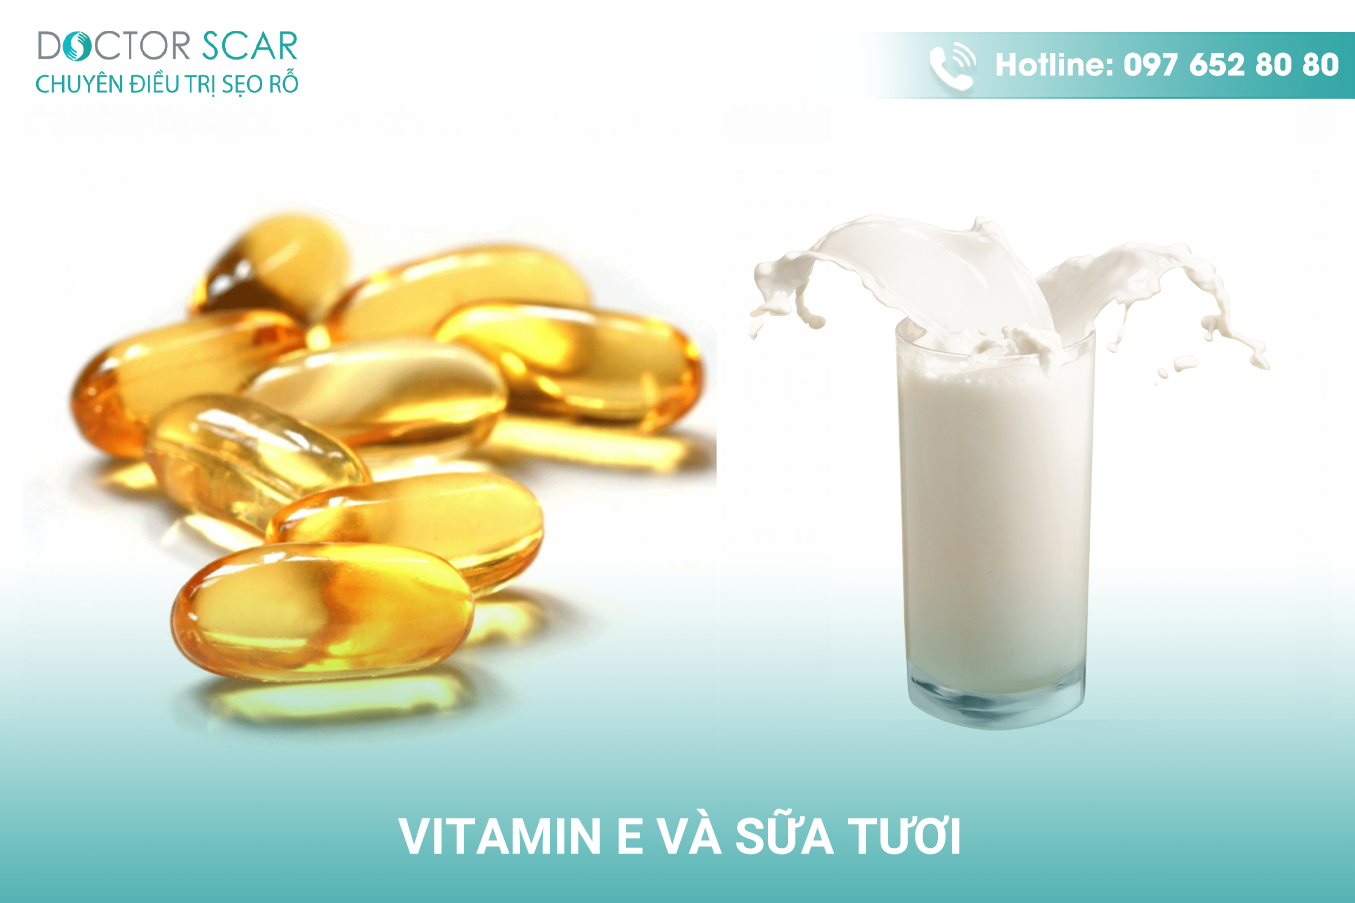 Kết hợp sữa tươi và vitamin e sẽ tăng hiệu quả trong điều trị sẹo thâm ở chân